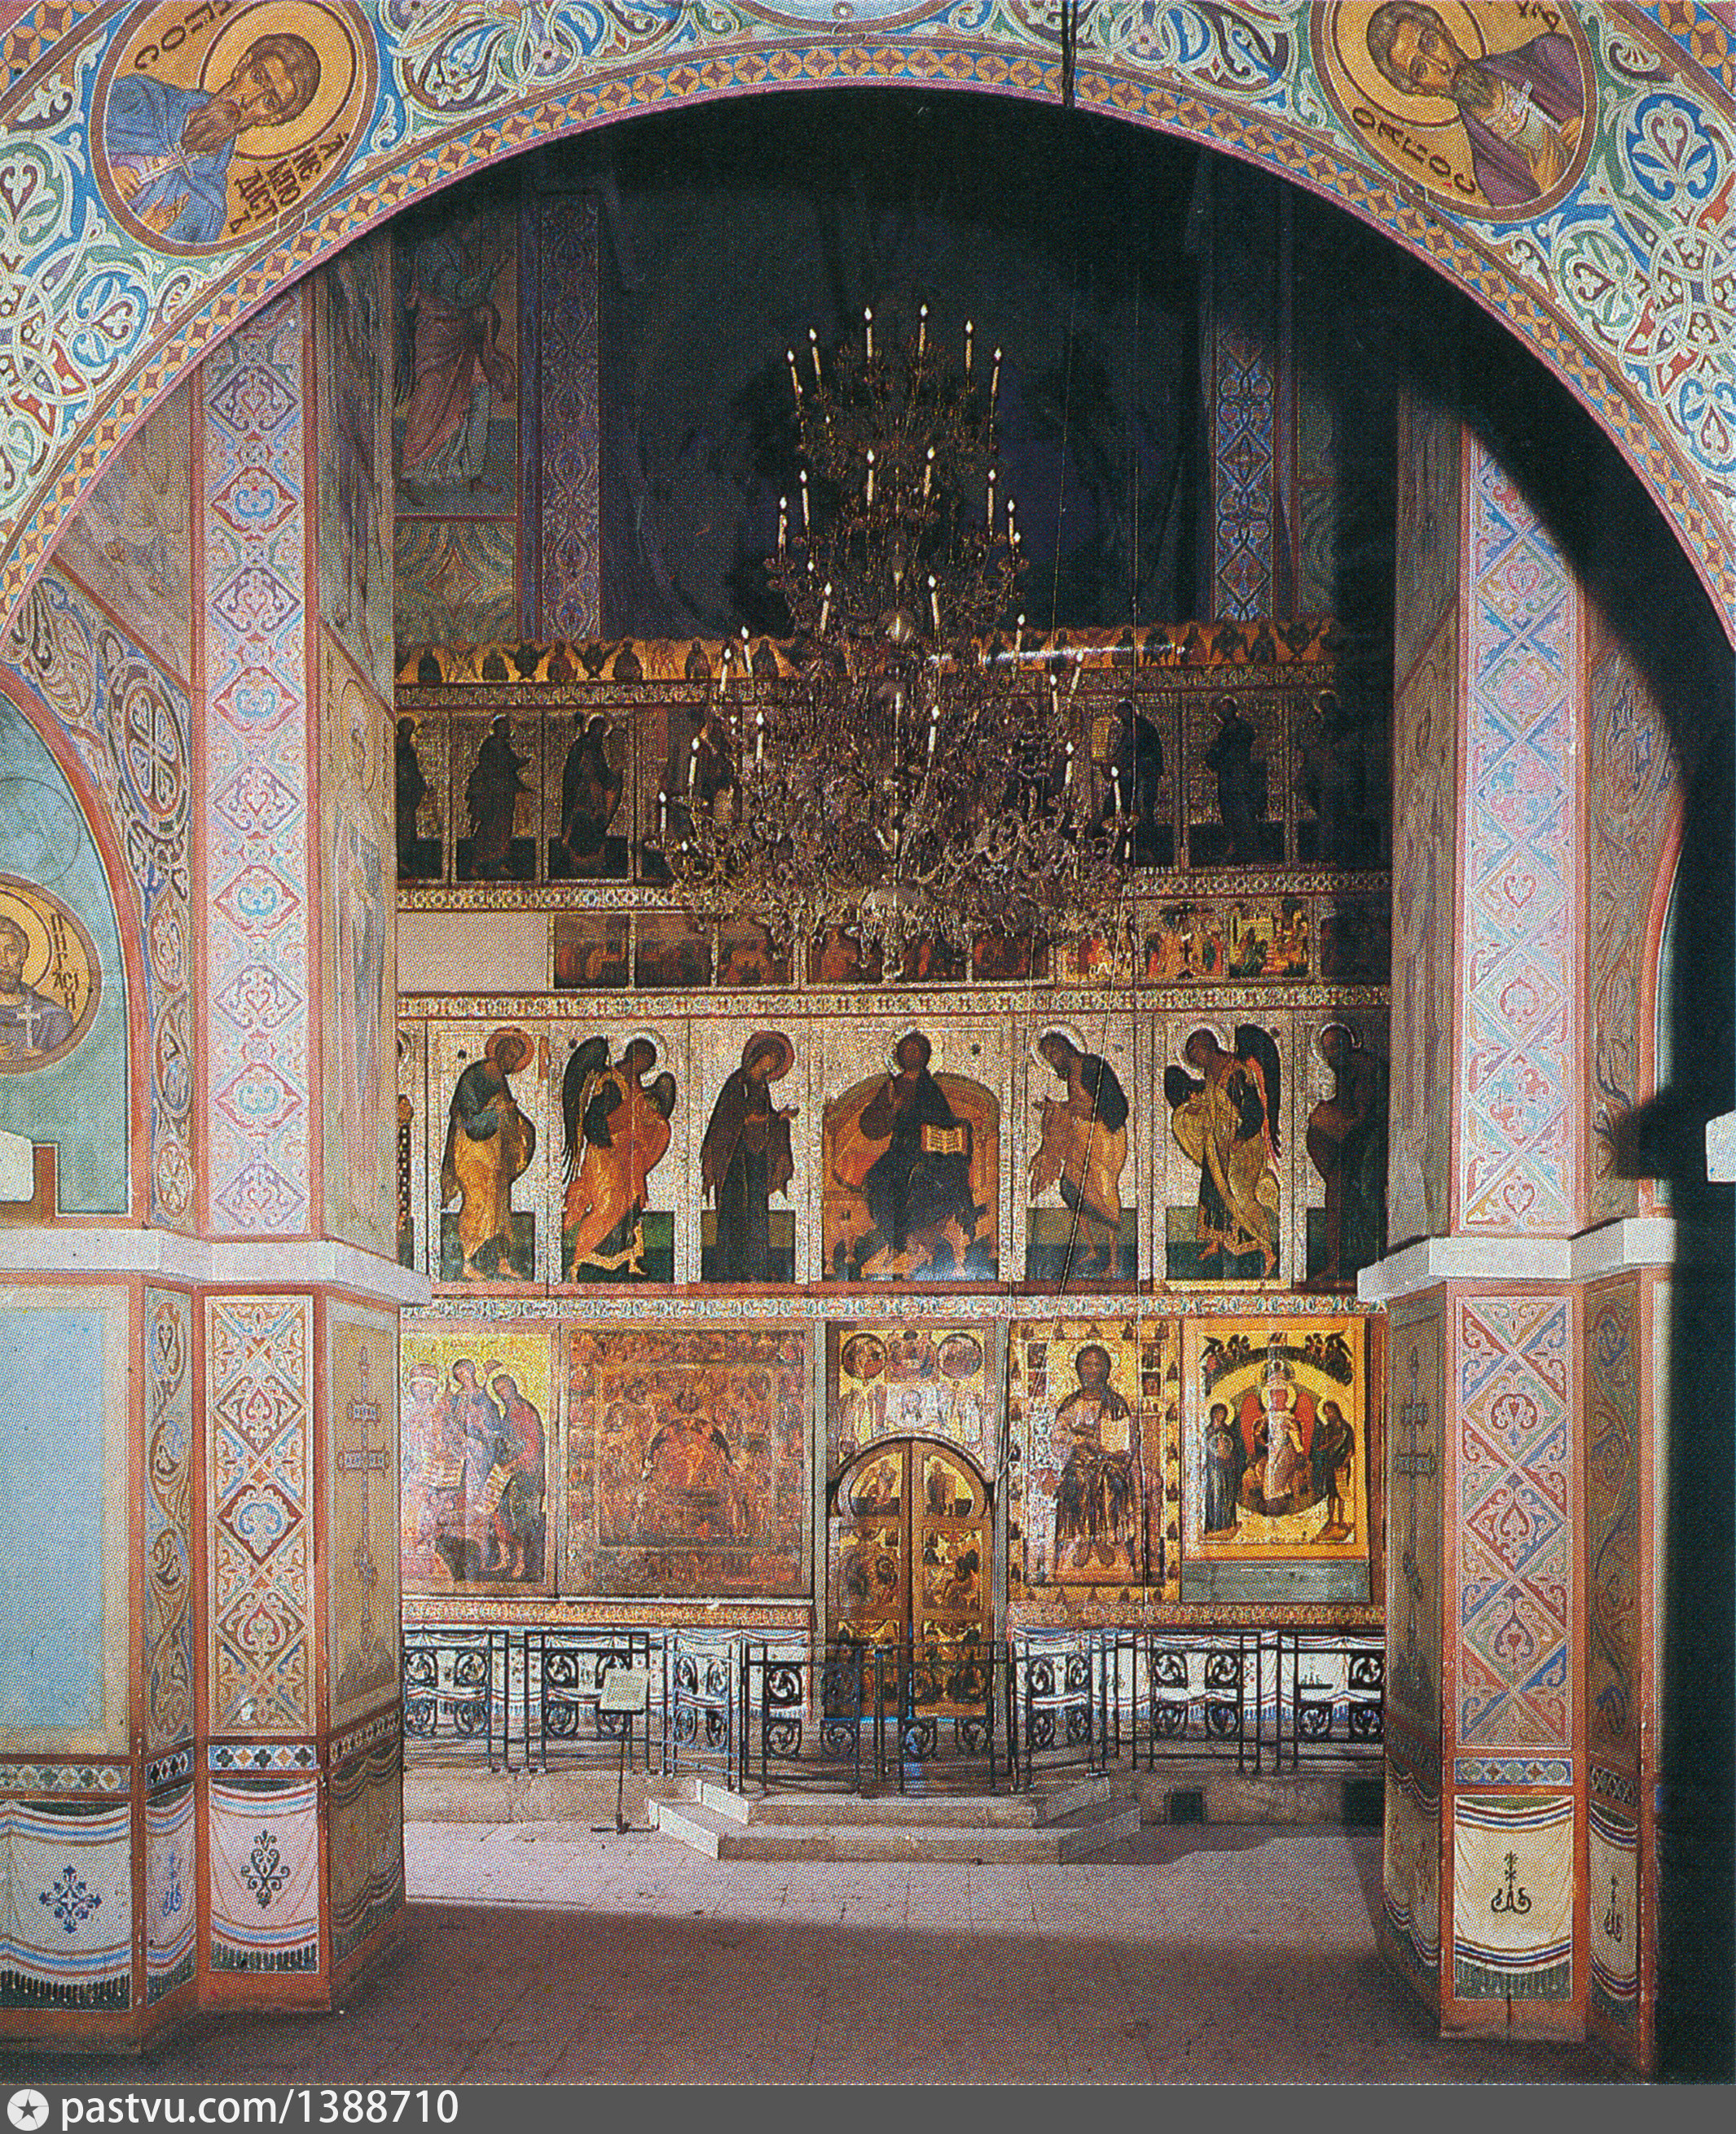 софийский собор великий новгород внутри